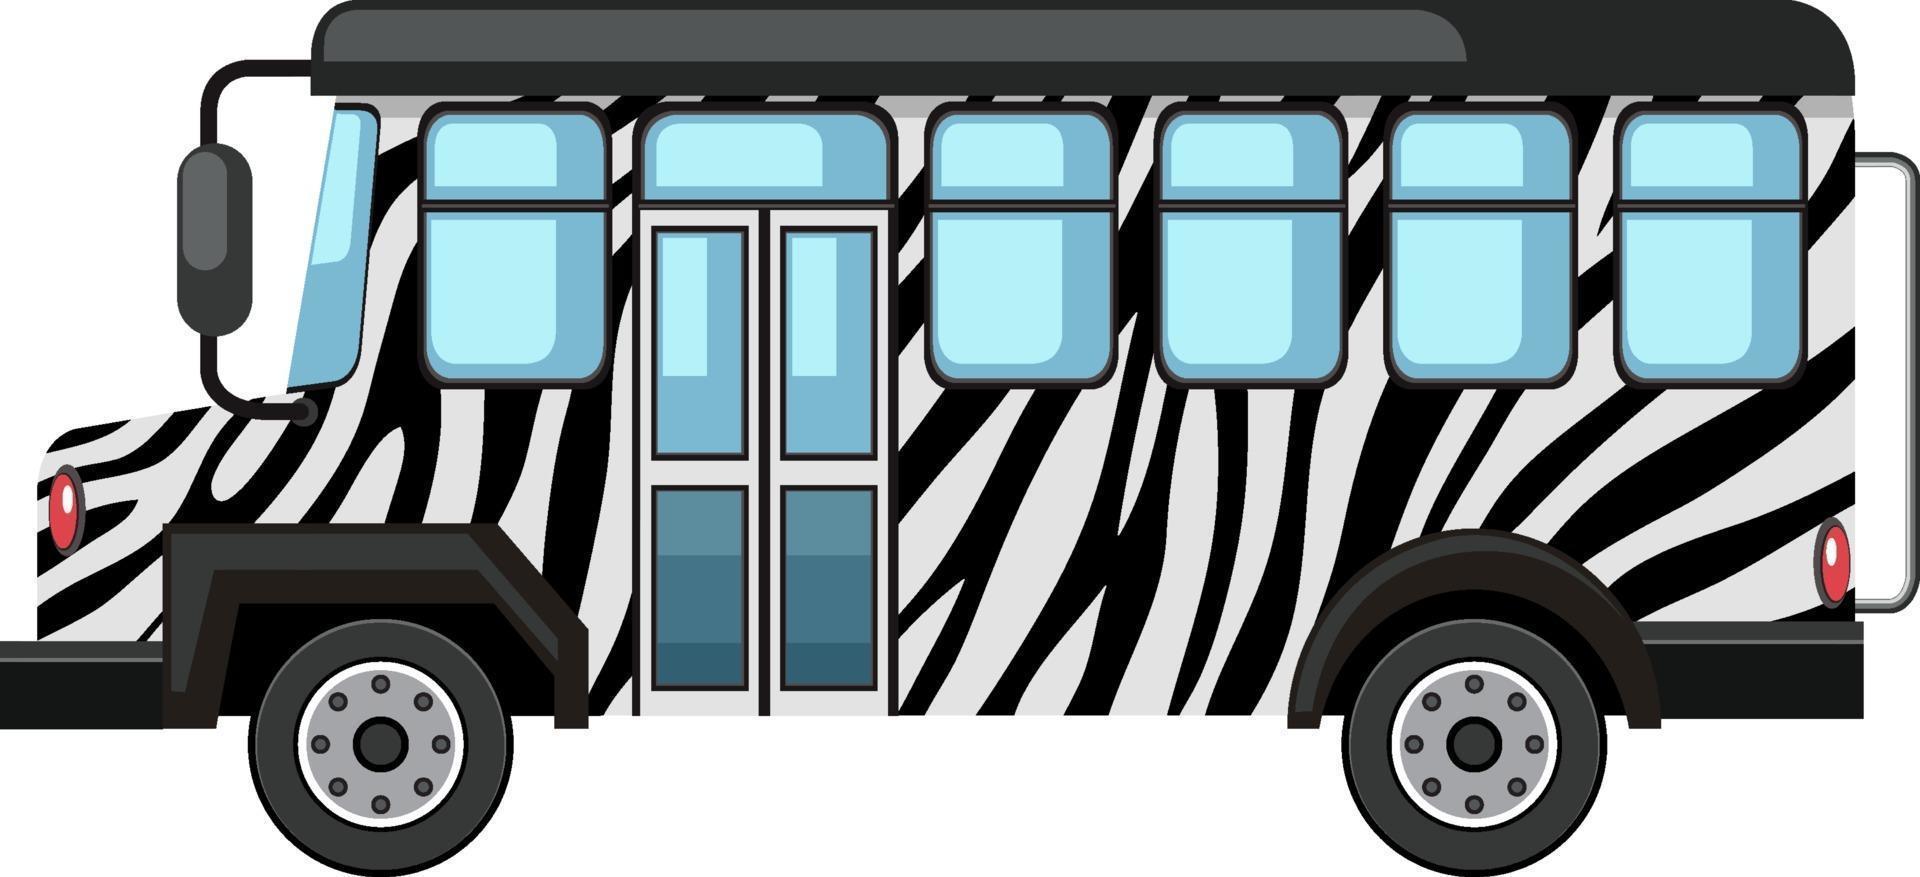 concetto di zoo con bus safari isolato su sfondo bianco vettore